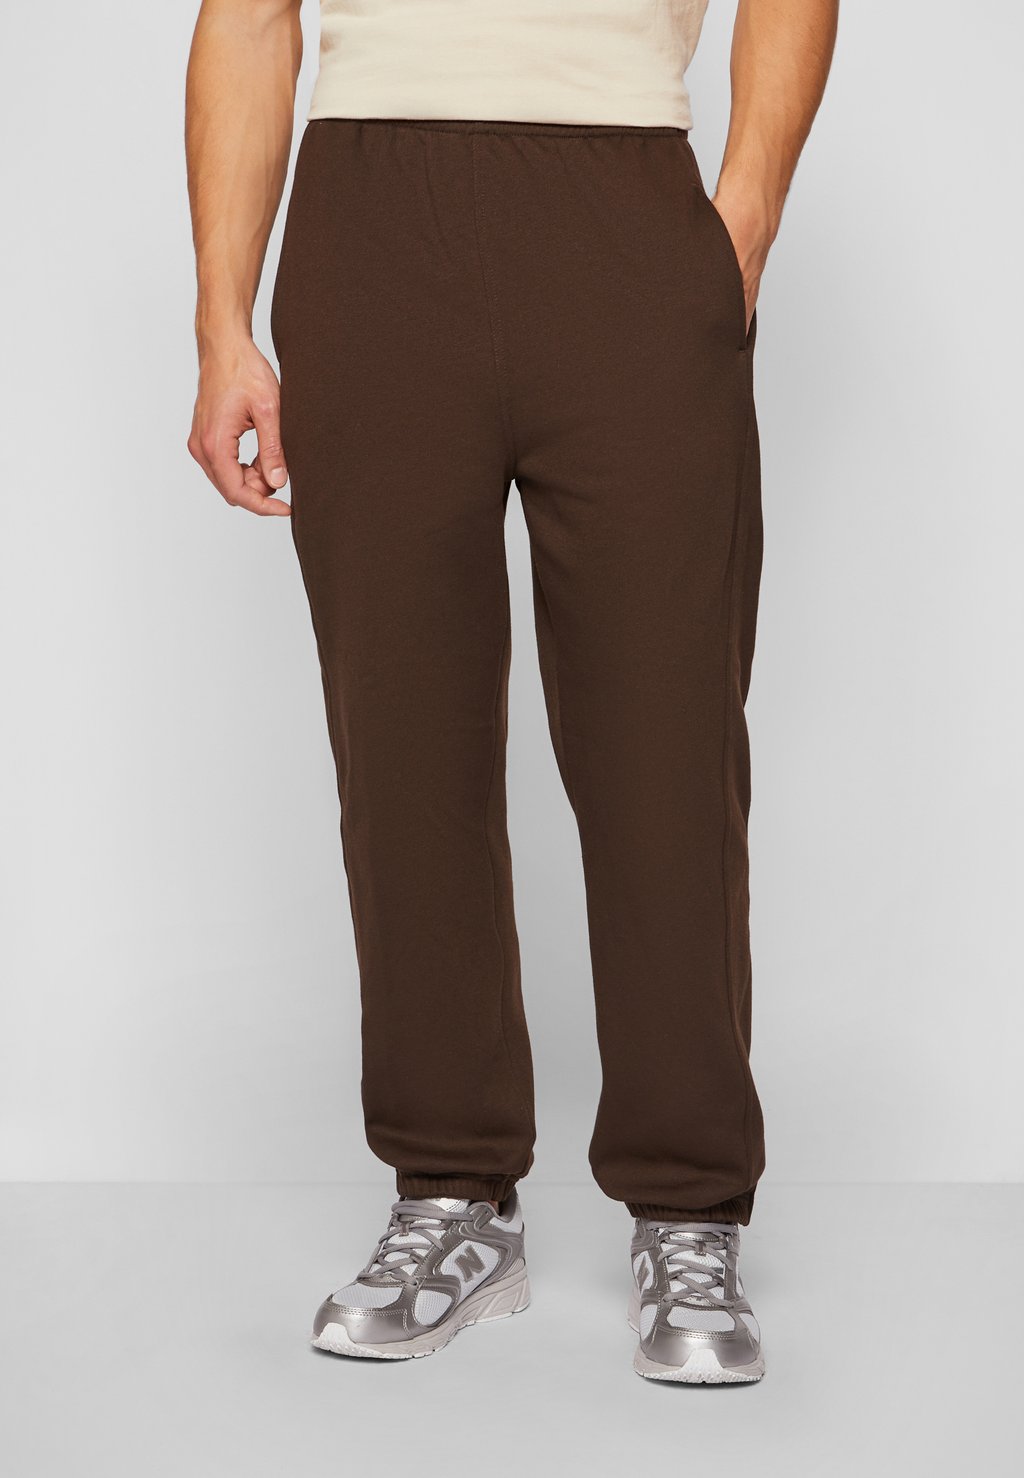 Спортивные брюки Sweatpants Sp Urban Classics, коричневый